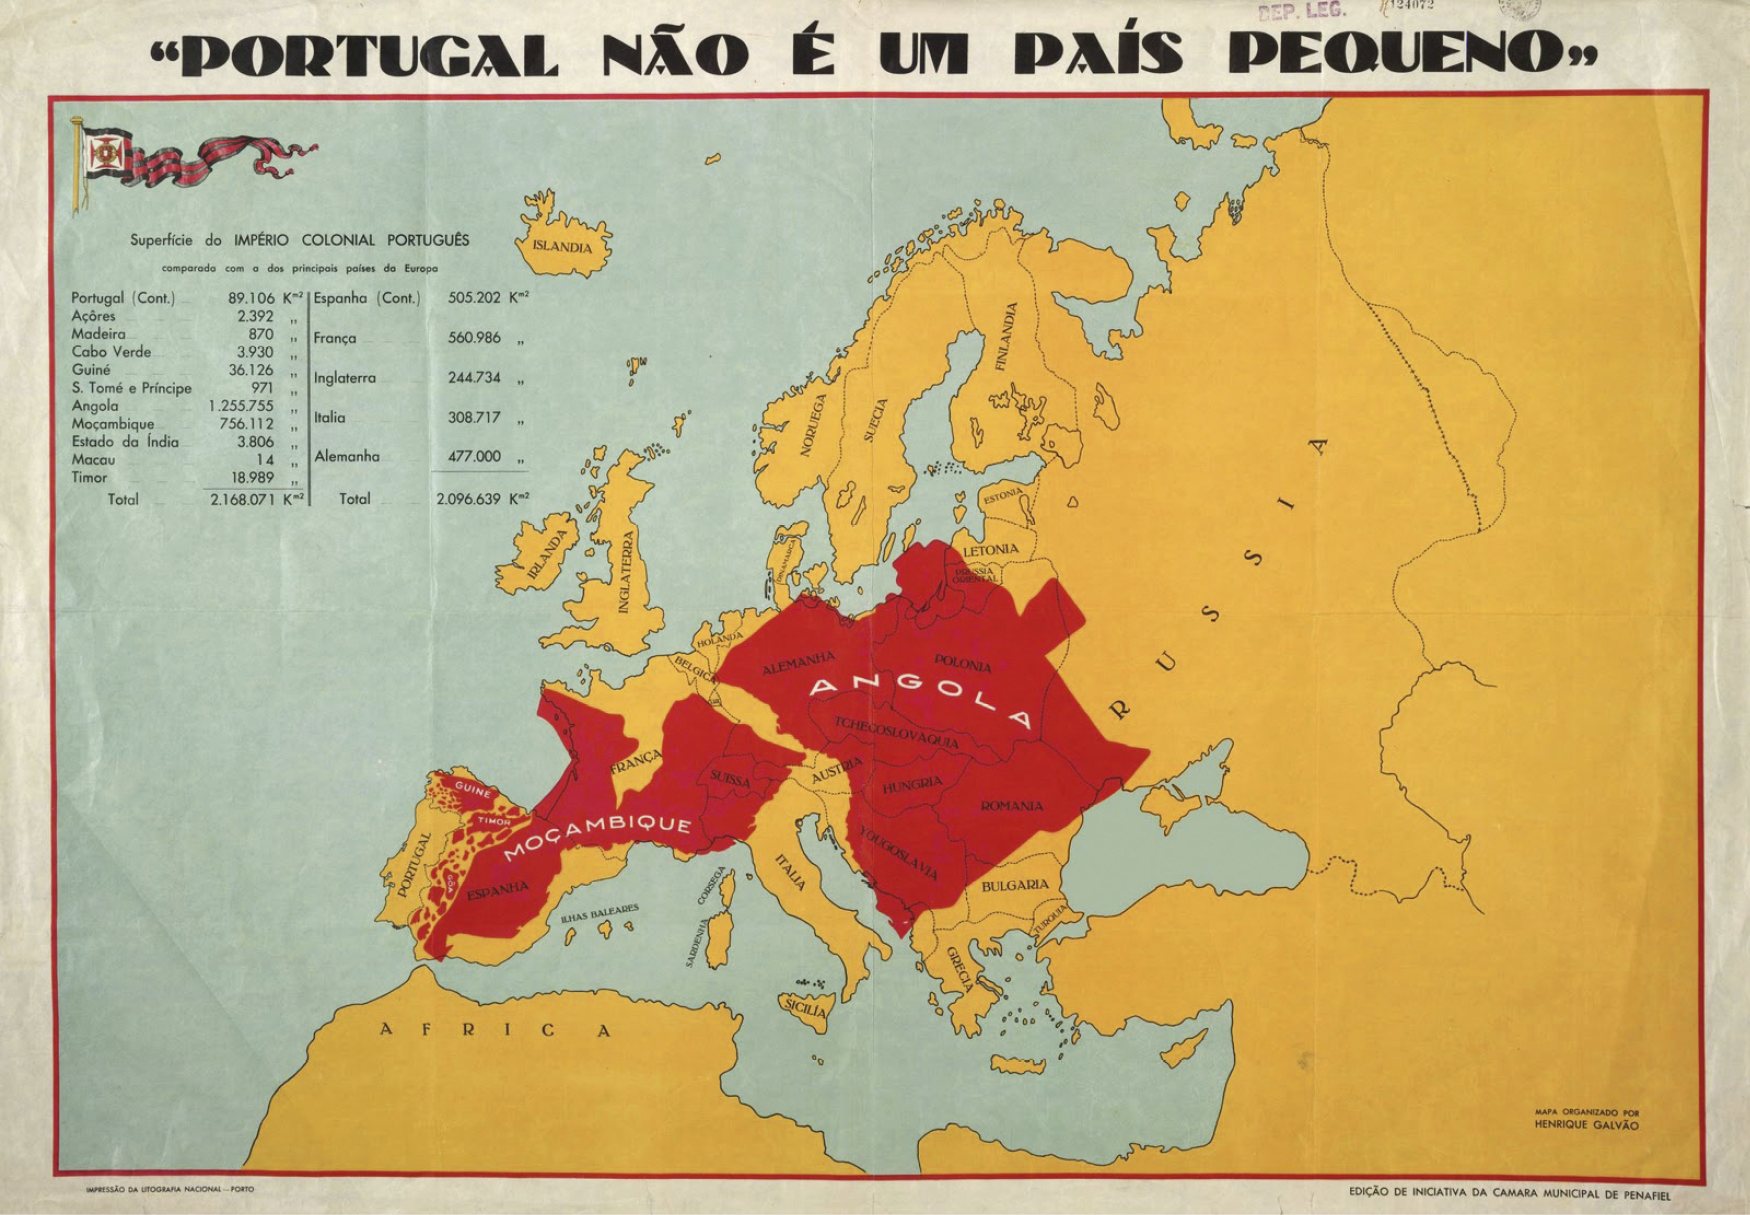 Ilustração. PORTUGAL NÃO É UM PAÍS PEQUENO. Mapa da Europa com destaque para Portugal, na costa oeste. Em vermelho, sobrepostos a boa parte da Europa, os mapas de Angola, Moçambique e outros territórios africanos.